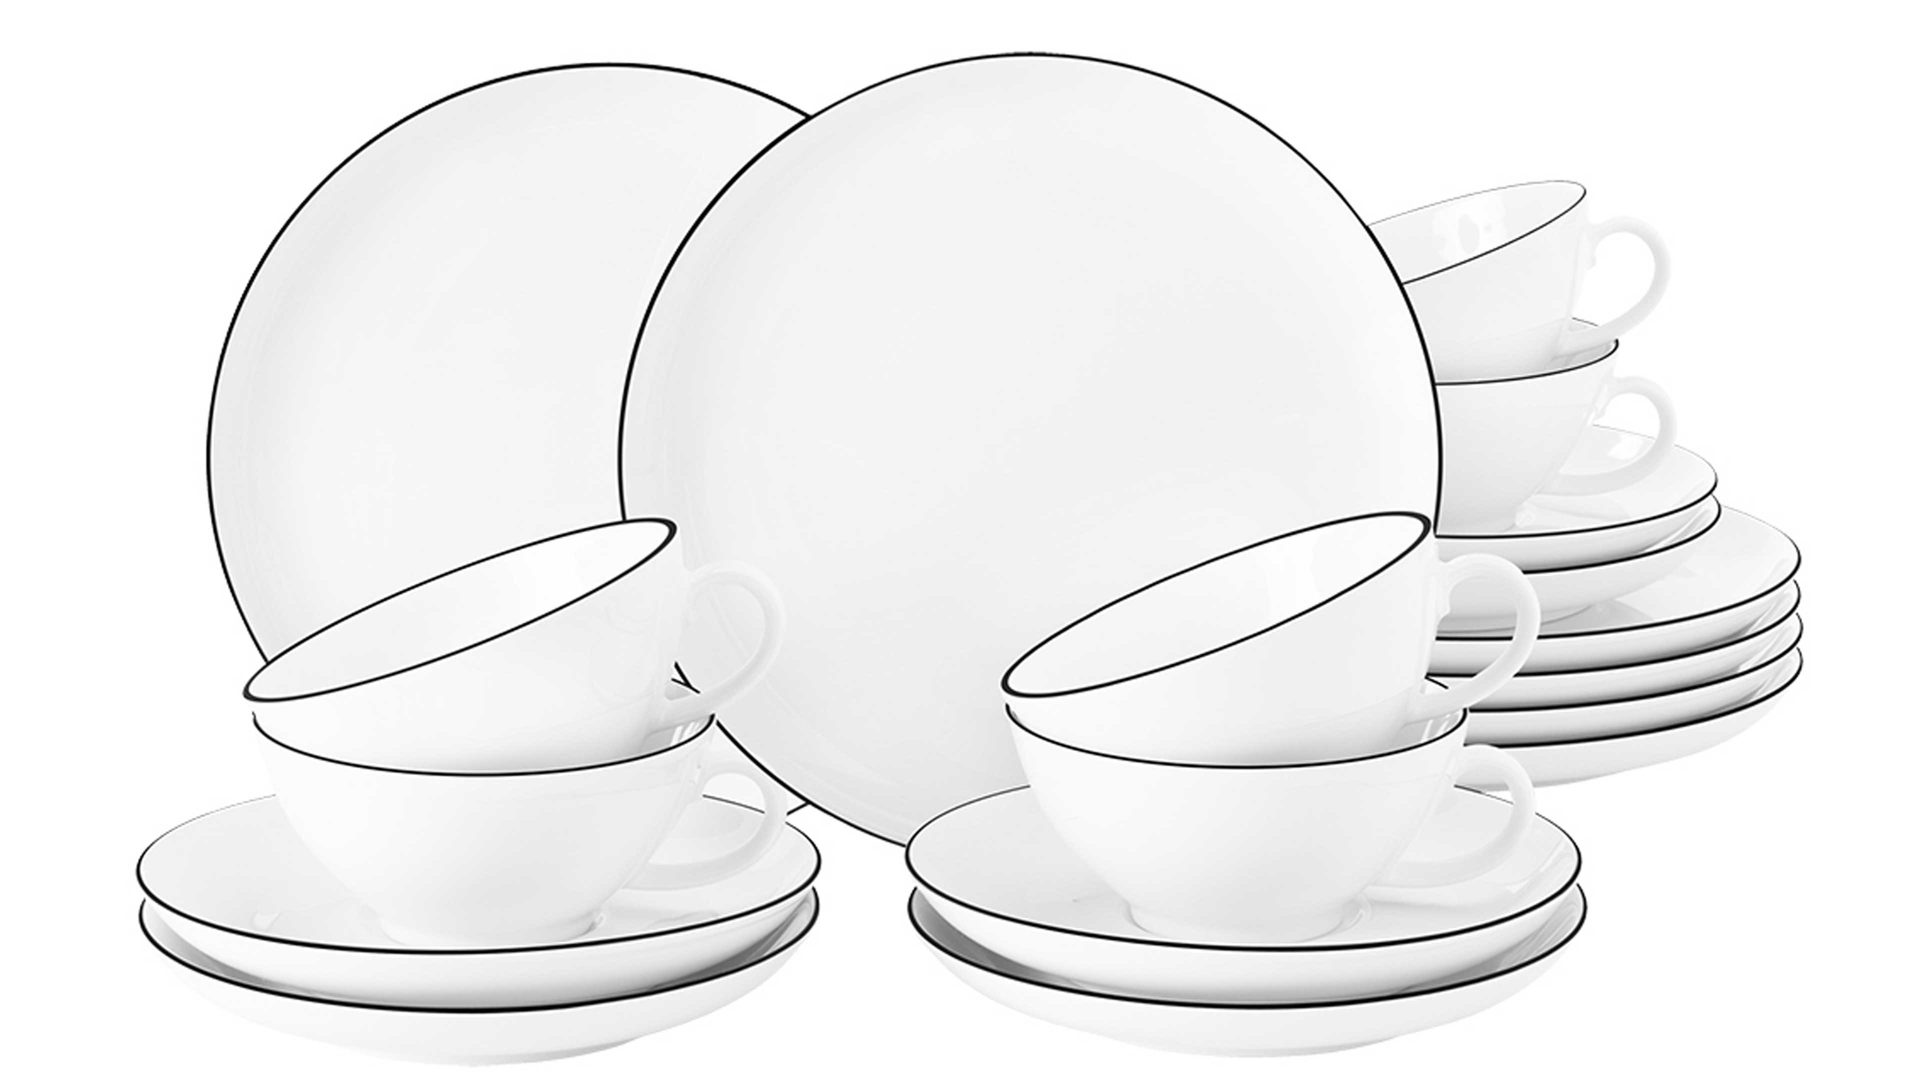 Teeservice Seltmann aus Porzellan in Weiß Seltmann Teeservice Lido weißes Porzellan - 18-teilig, kleine Tassen